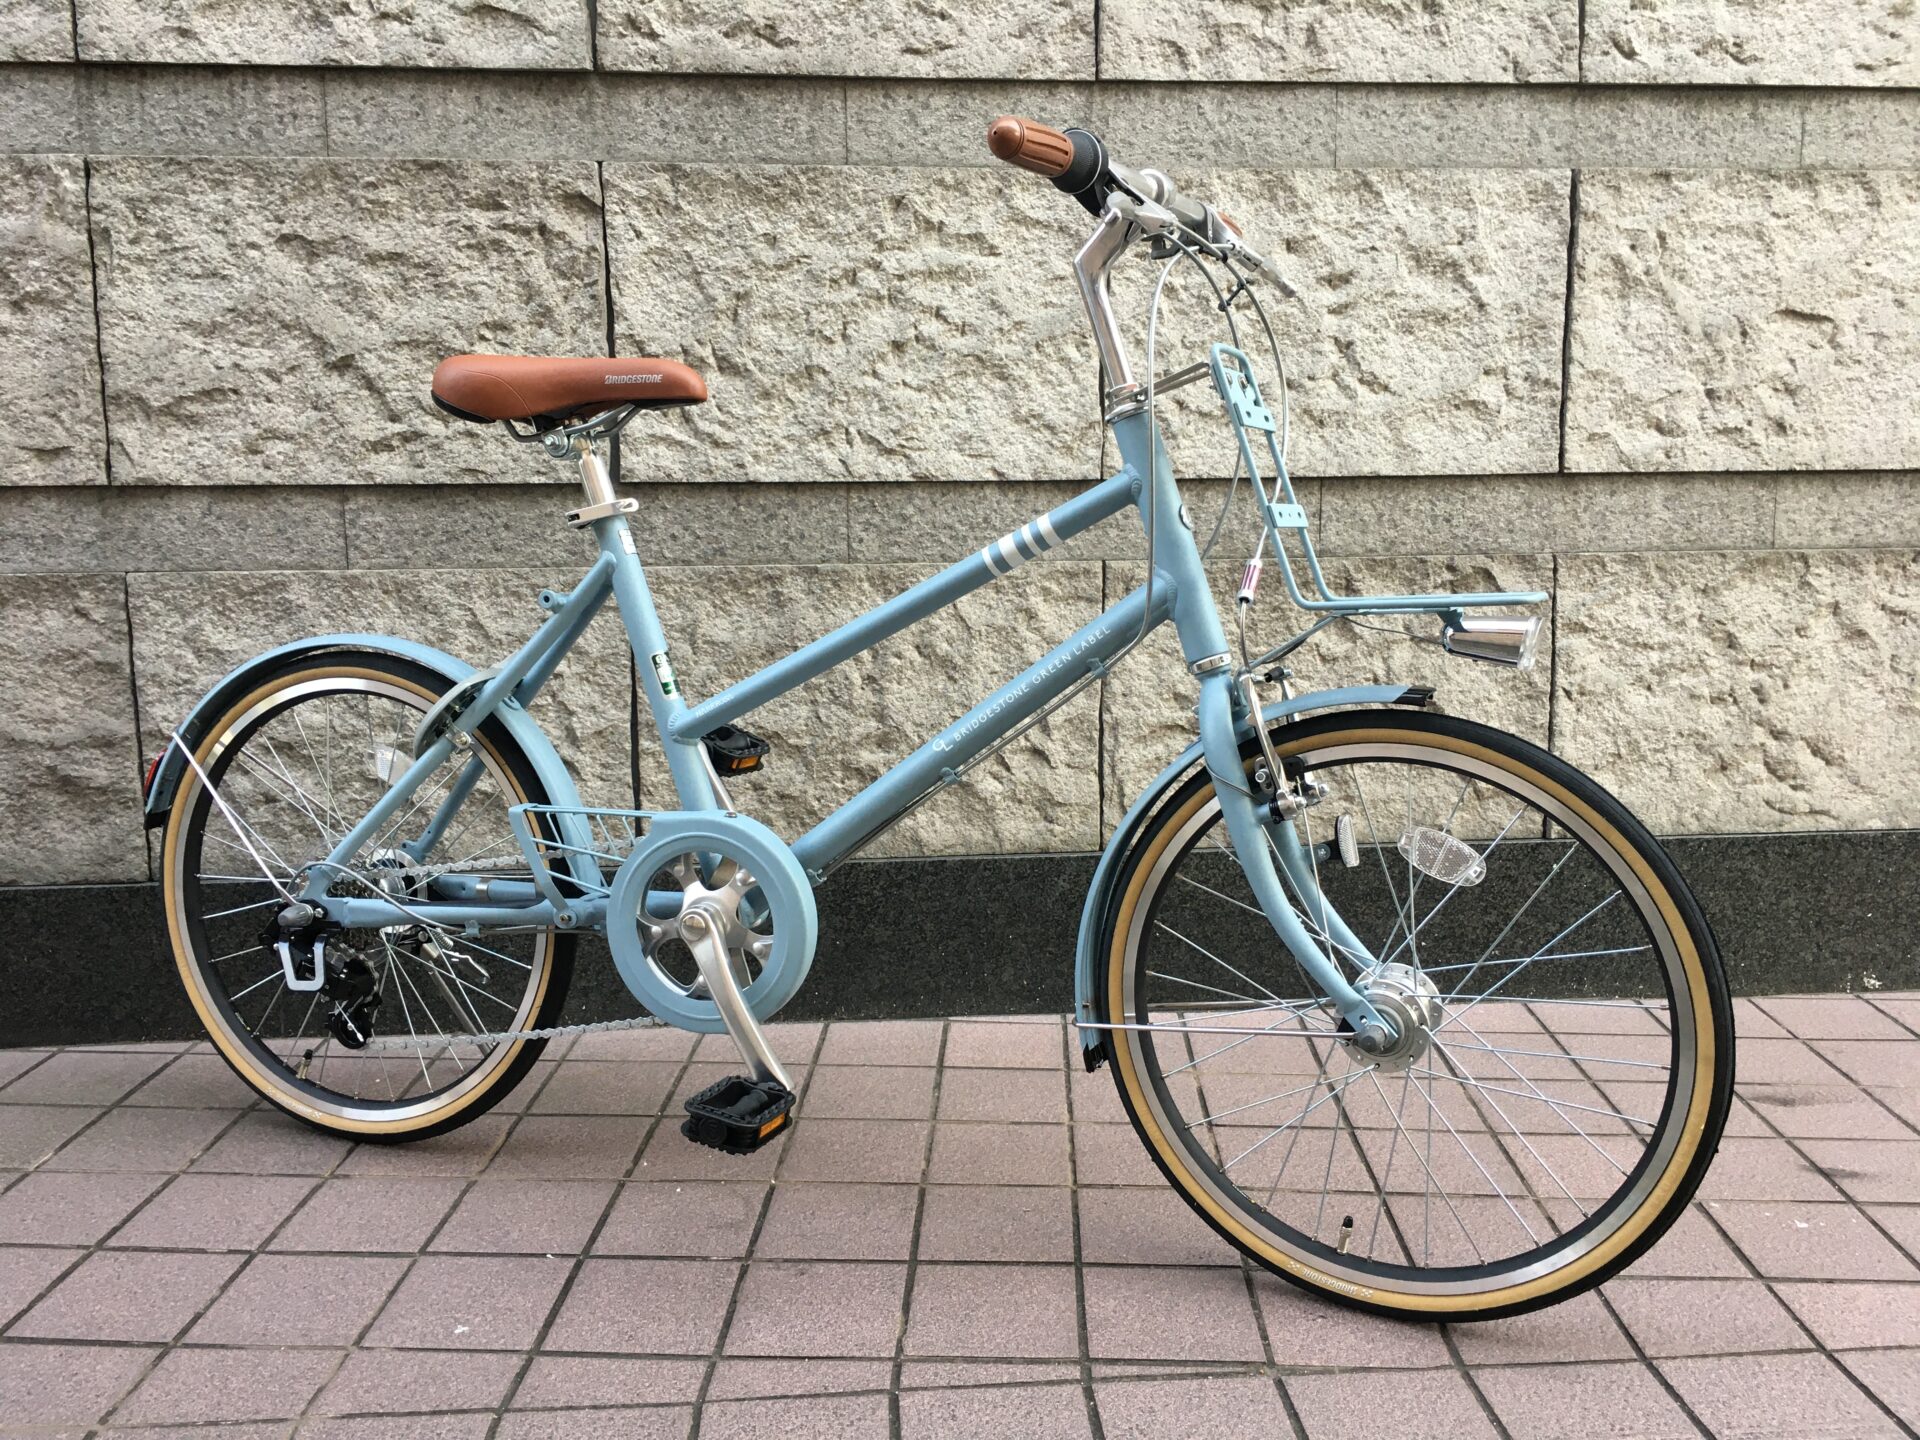 デザインもおしゃれで京都の街並みにピッタリの小径自転車 小回りも効きやすく頑丈な設計で長年寄り添ってくれる Bridgestone Markrosa M7 ブリヂストン マークローザ エム セブン をご紹介 エイリン四条店 京都の中古自転車 新車販売 サイクルショップ エイリン